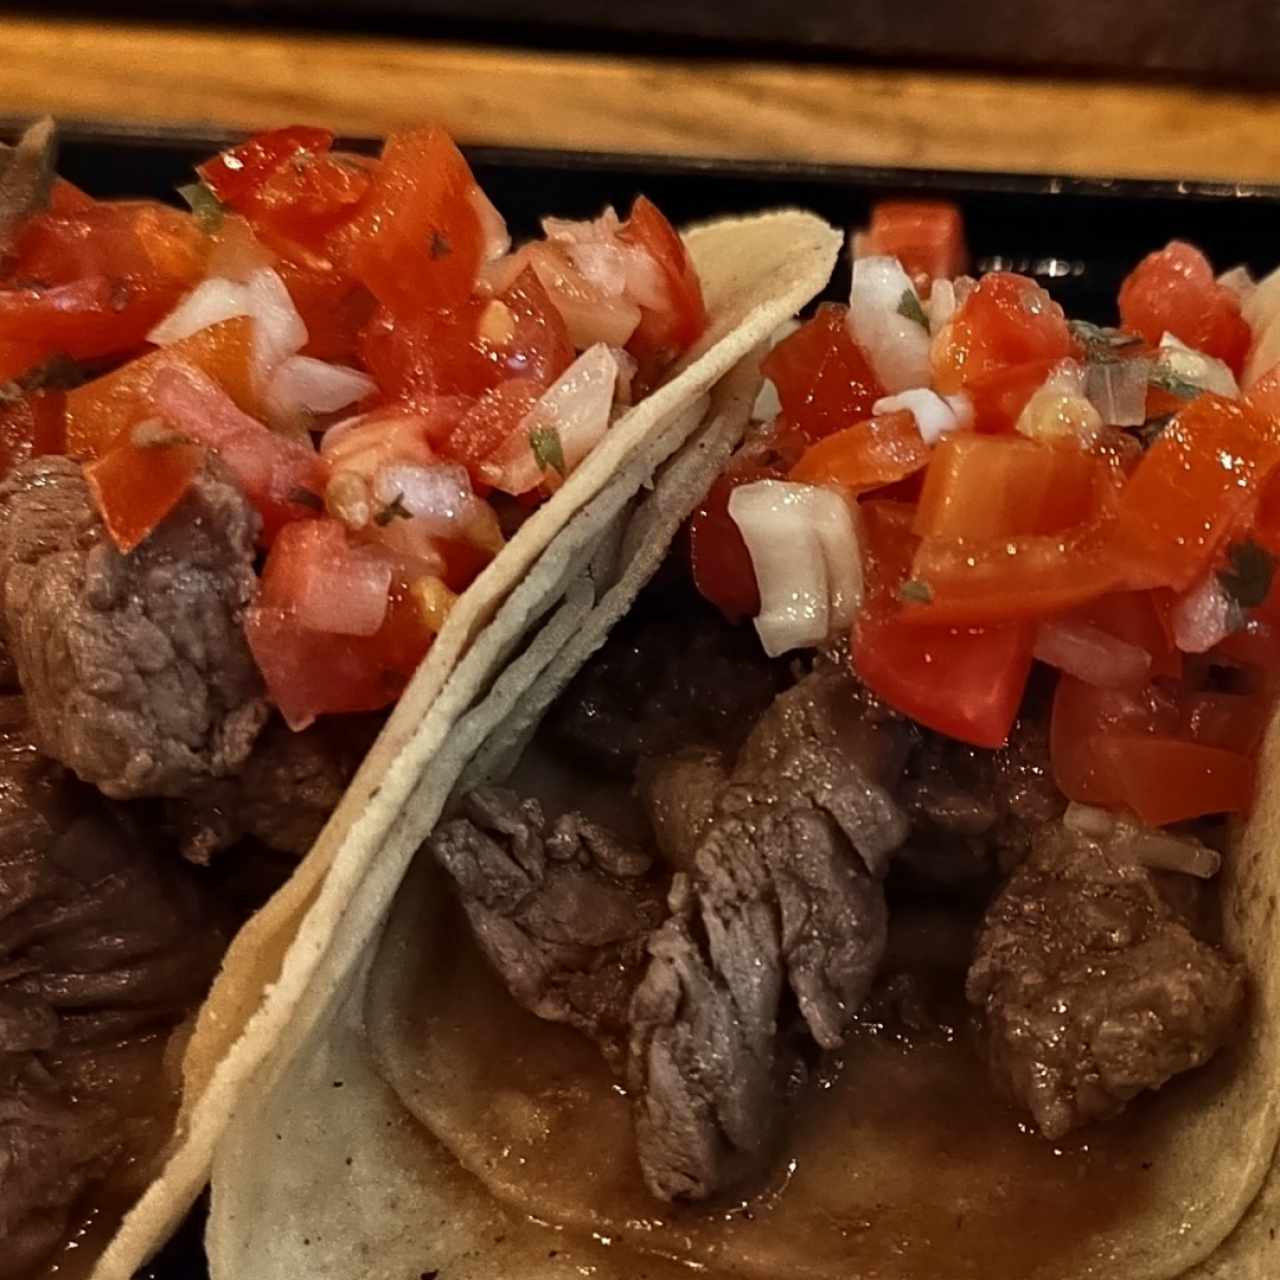 Los Tacos - Arrachera